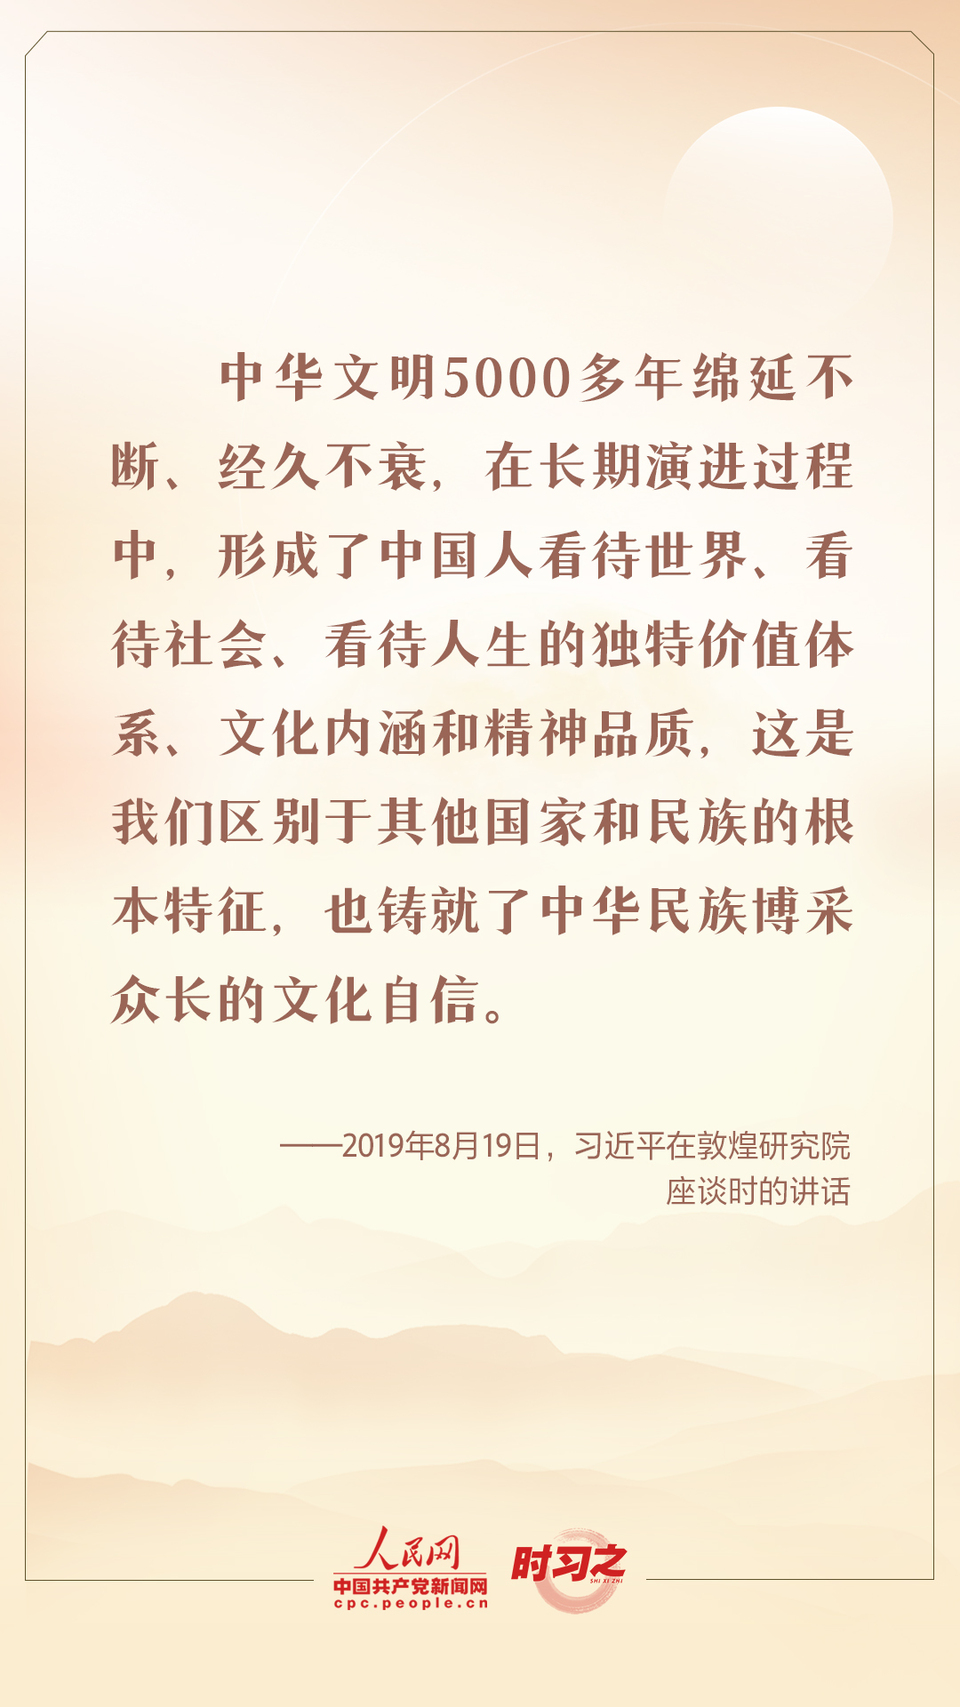 时习之 迎中秋 话传统 跟总书记一起坚定中华文化自信插图4